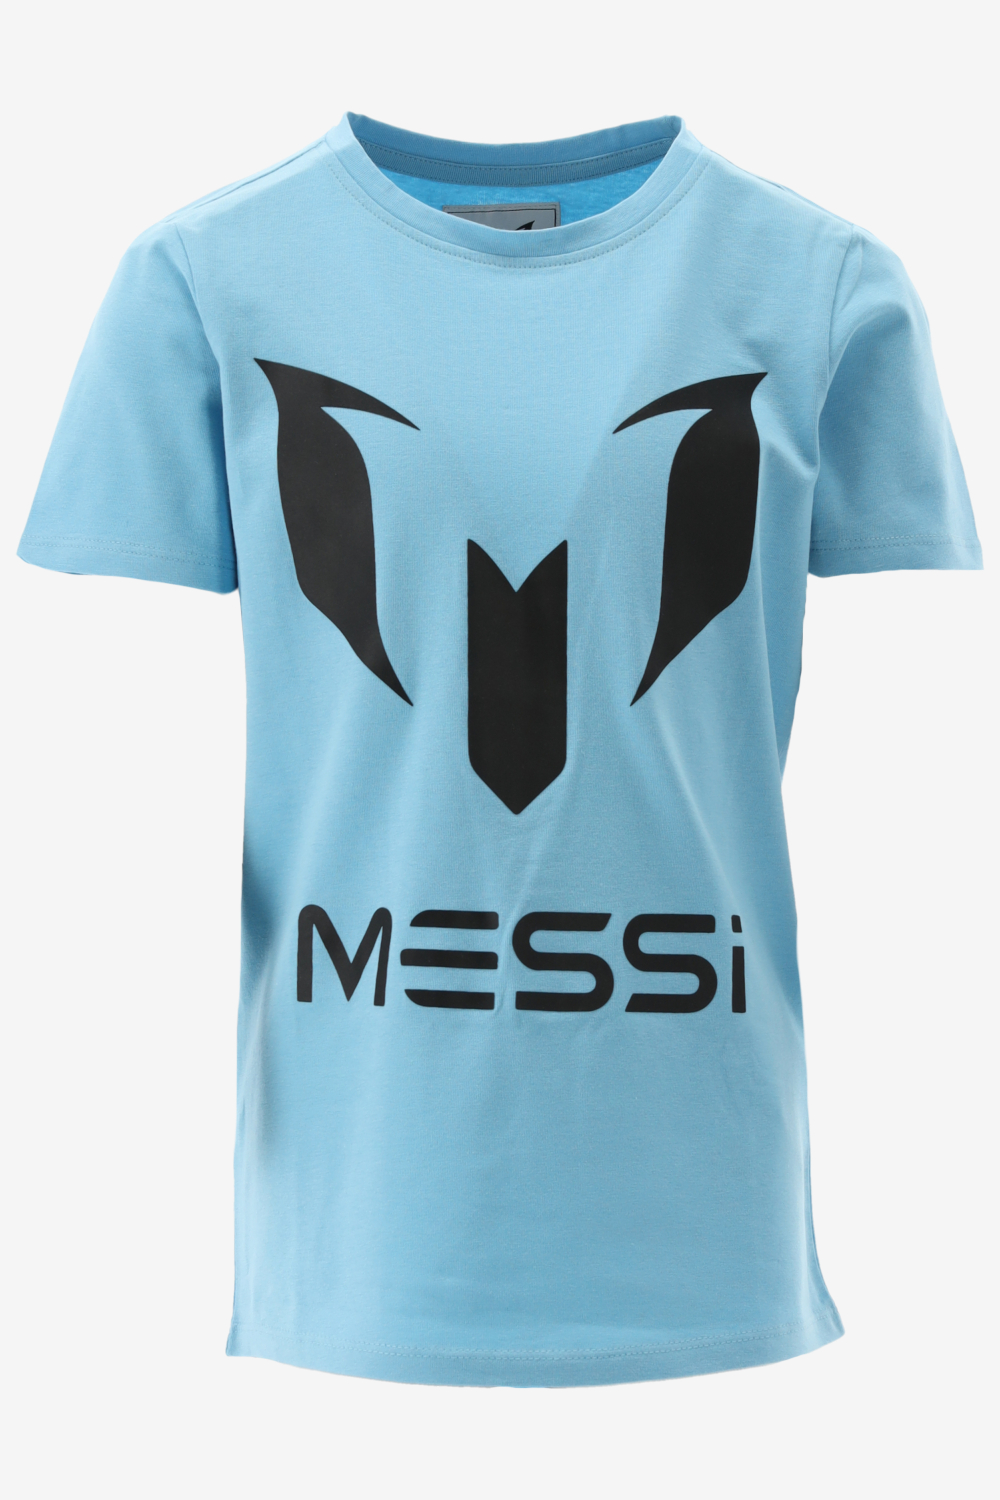 Vingino T-shirt MESSI